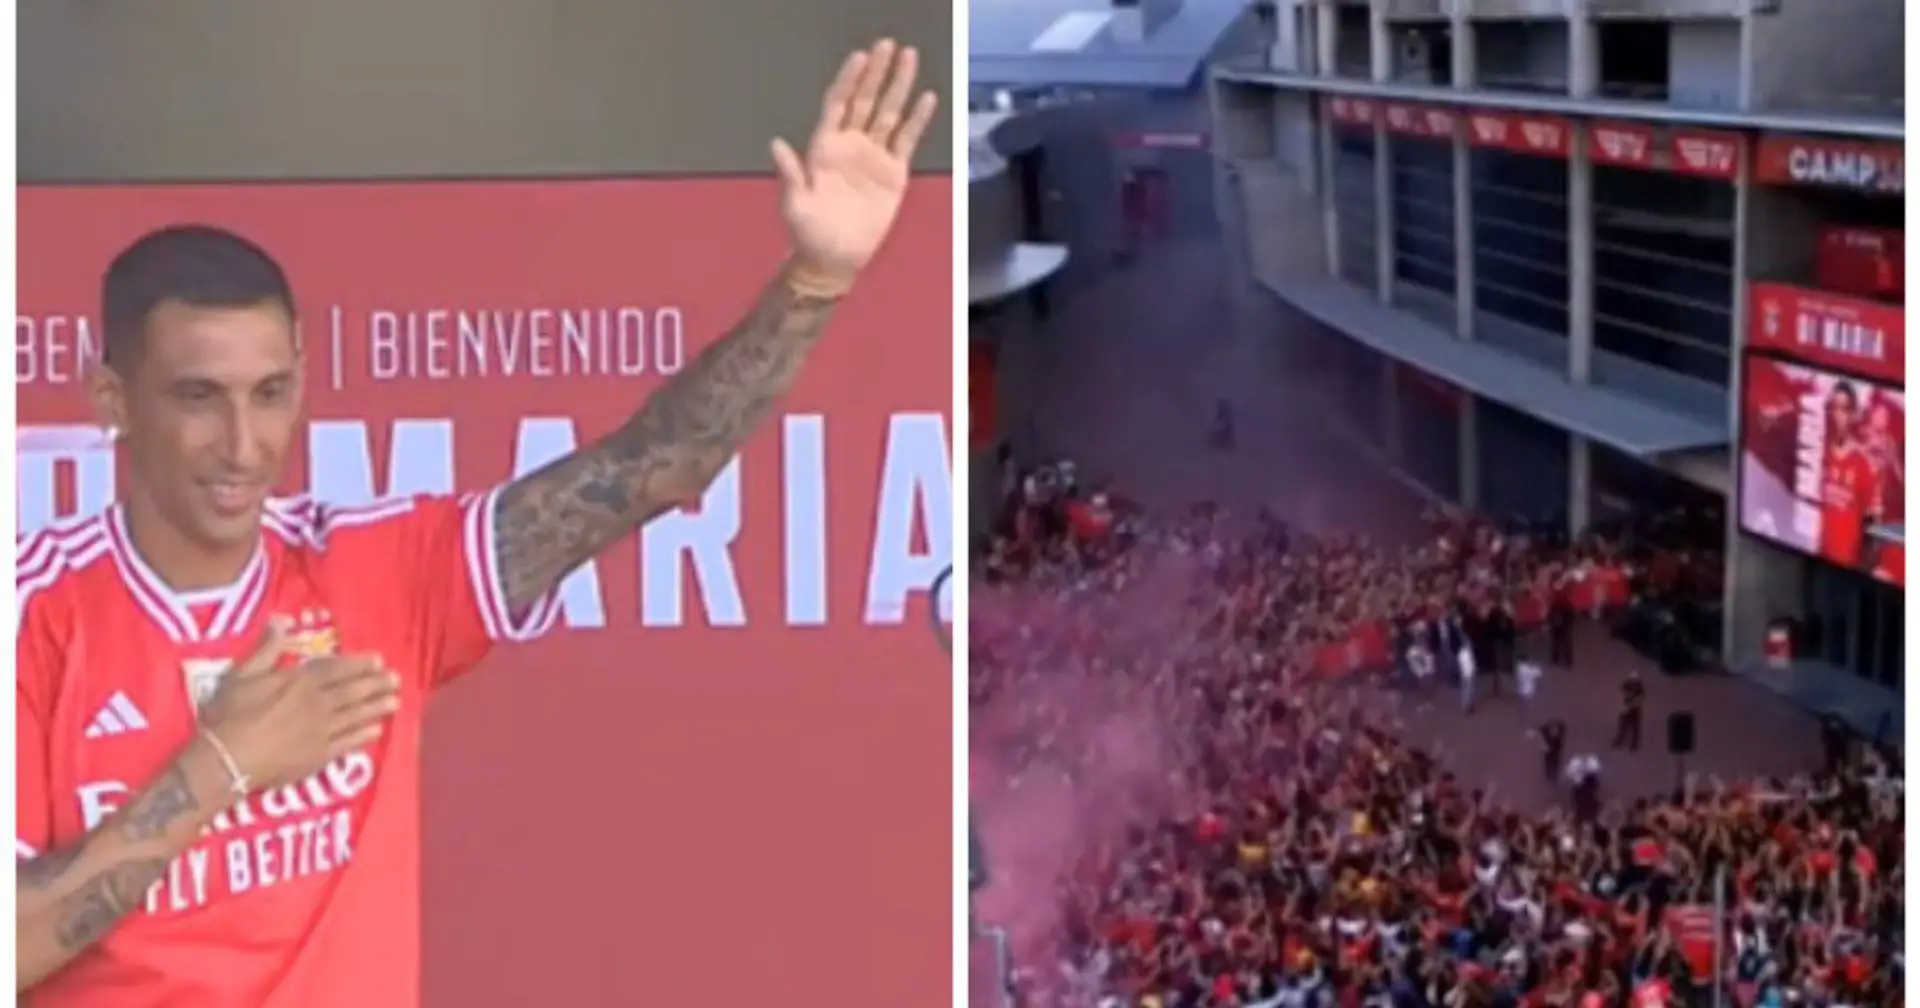 📹 Angel Di Maria kehrt zu Benfica zurück. Er wurde von den Fans lautstark begrüßt